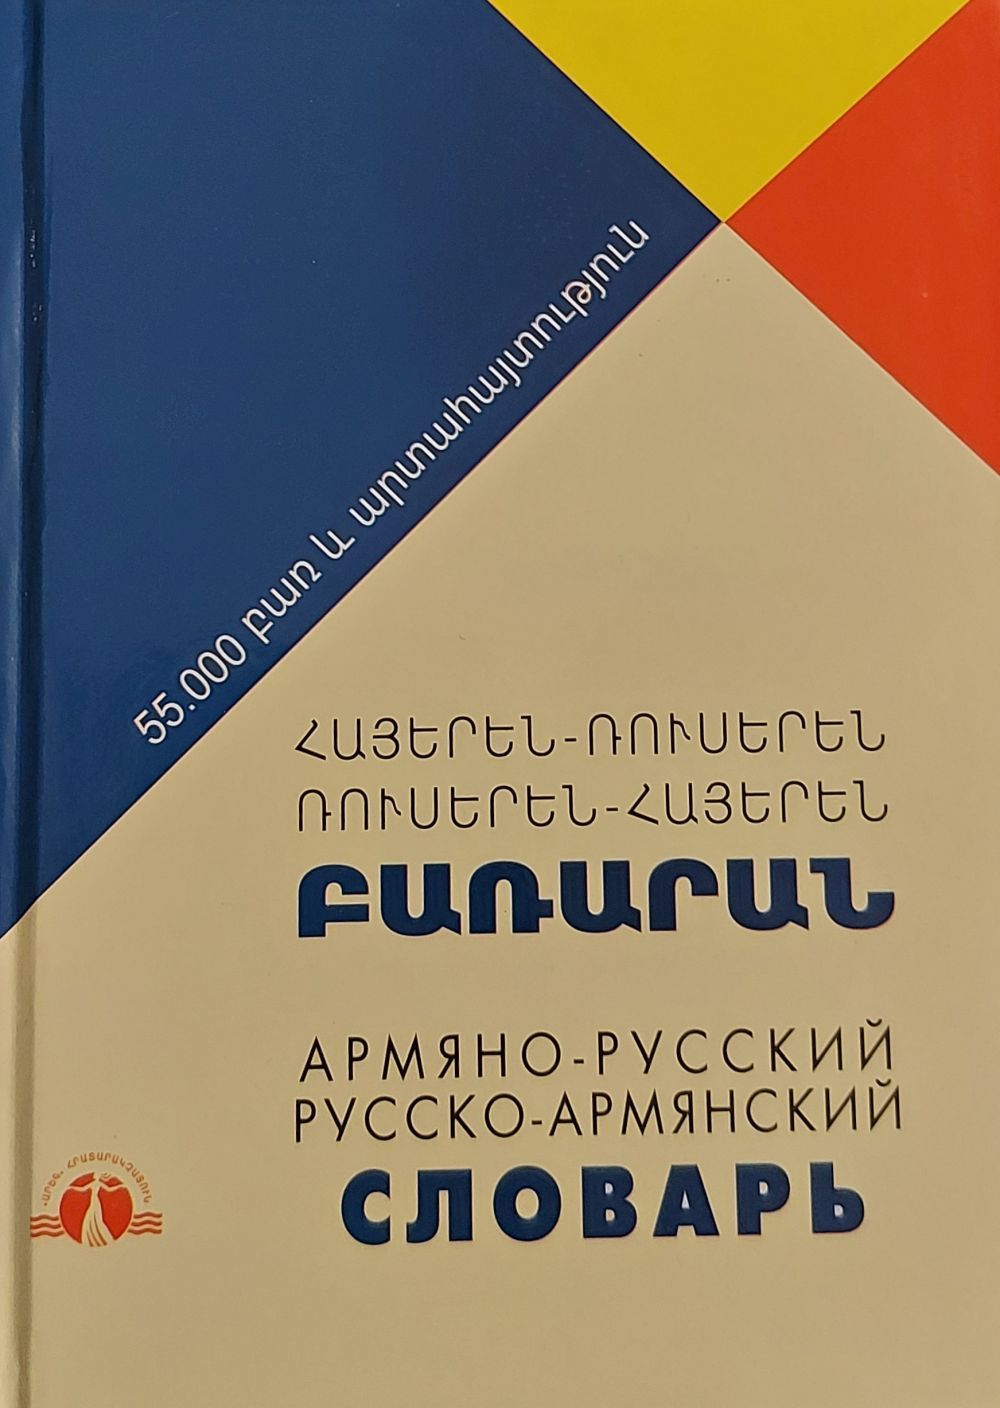 Armenian-Russian, Russian-Armenian Dictionary (55000 words)